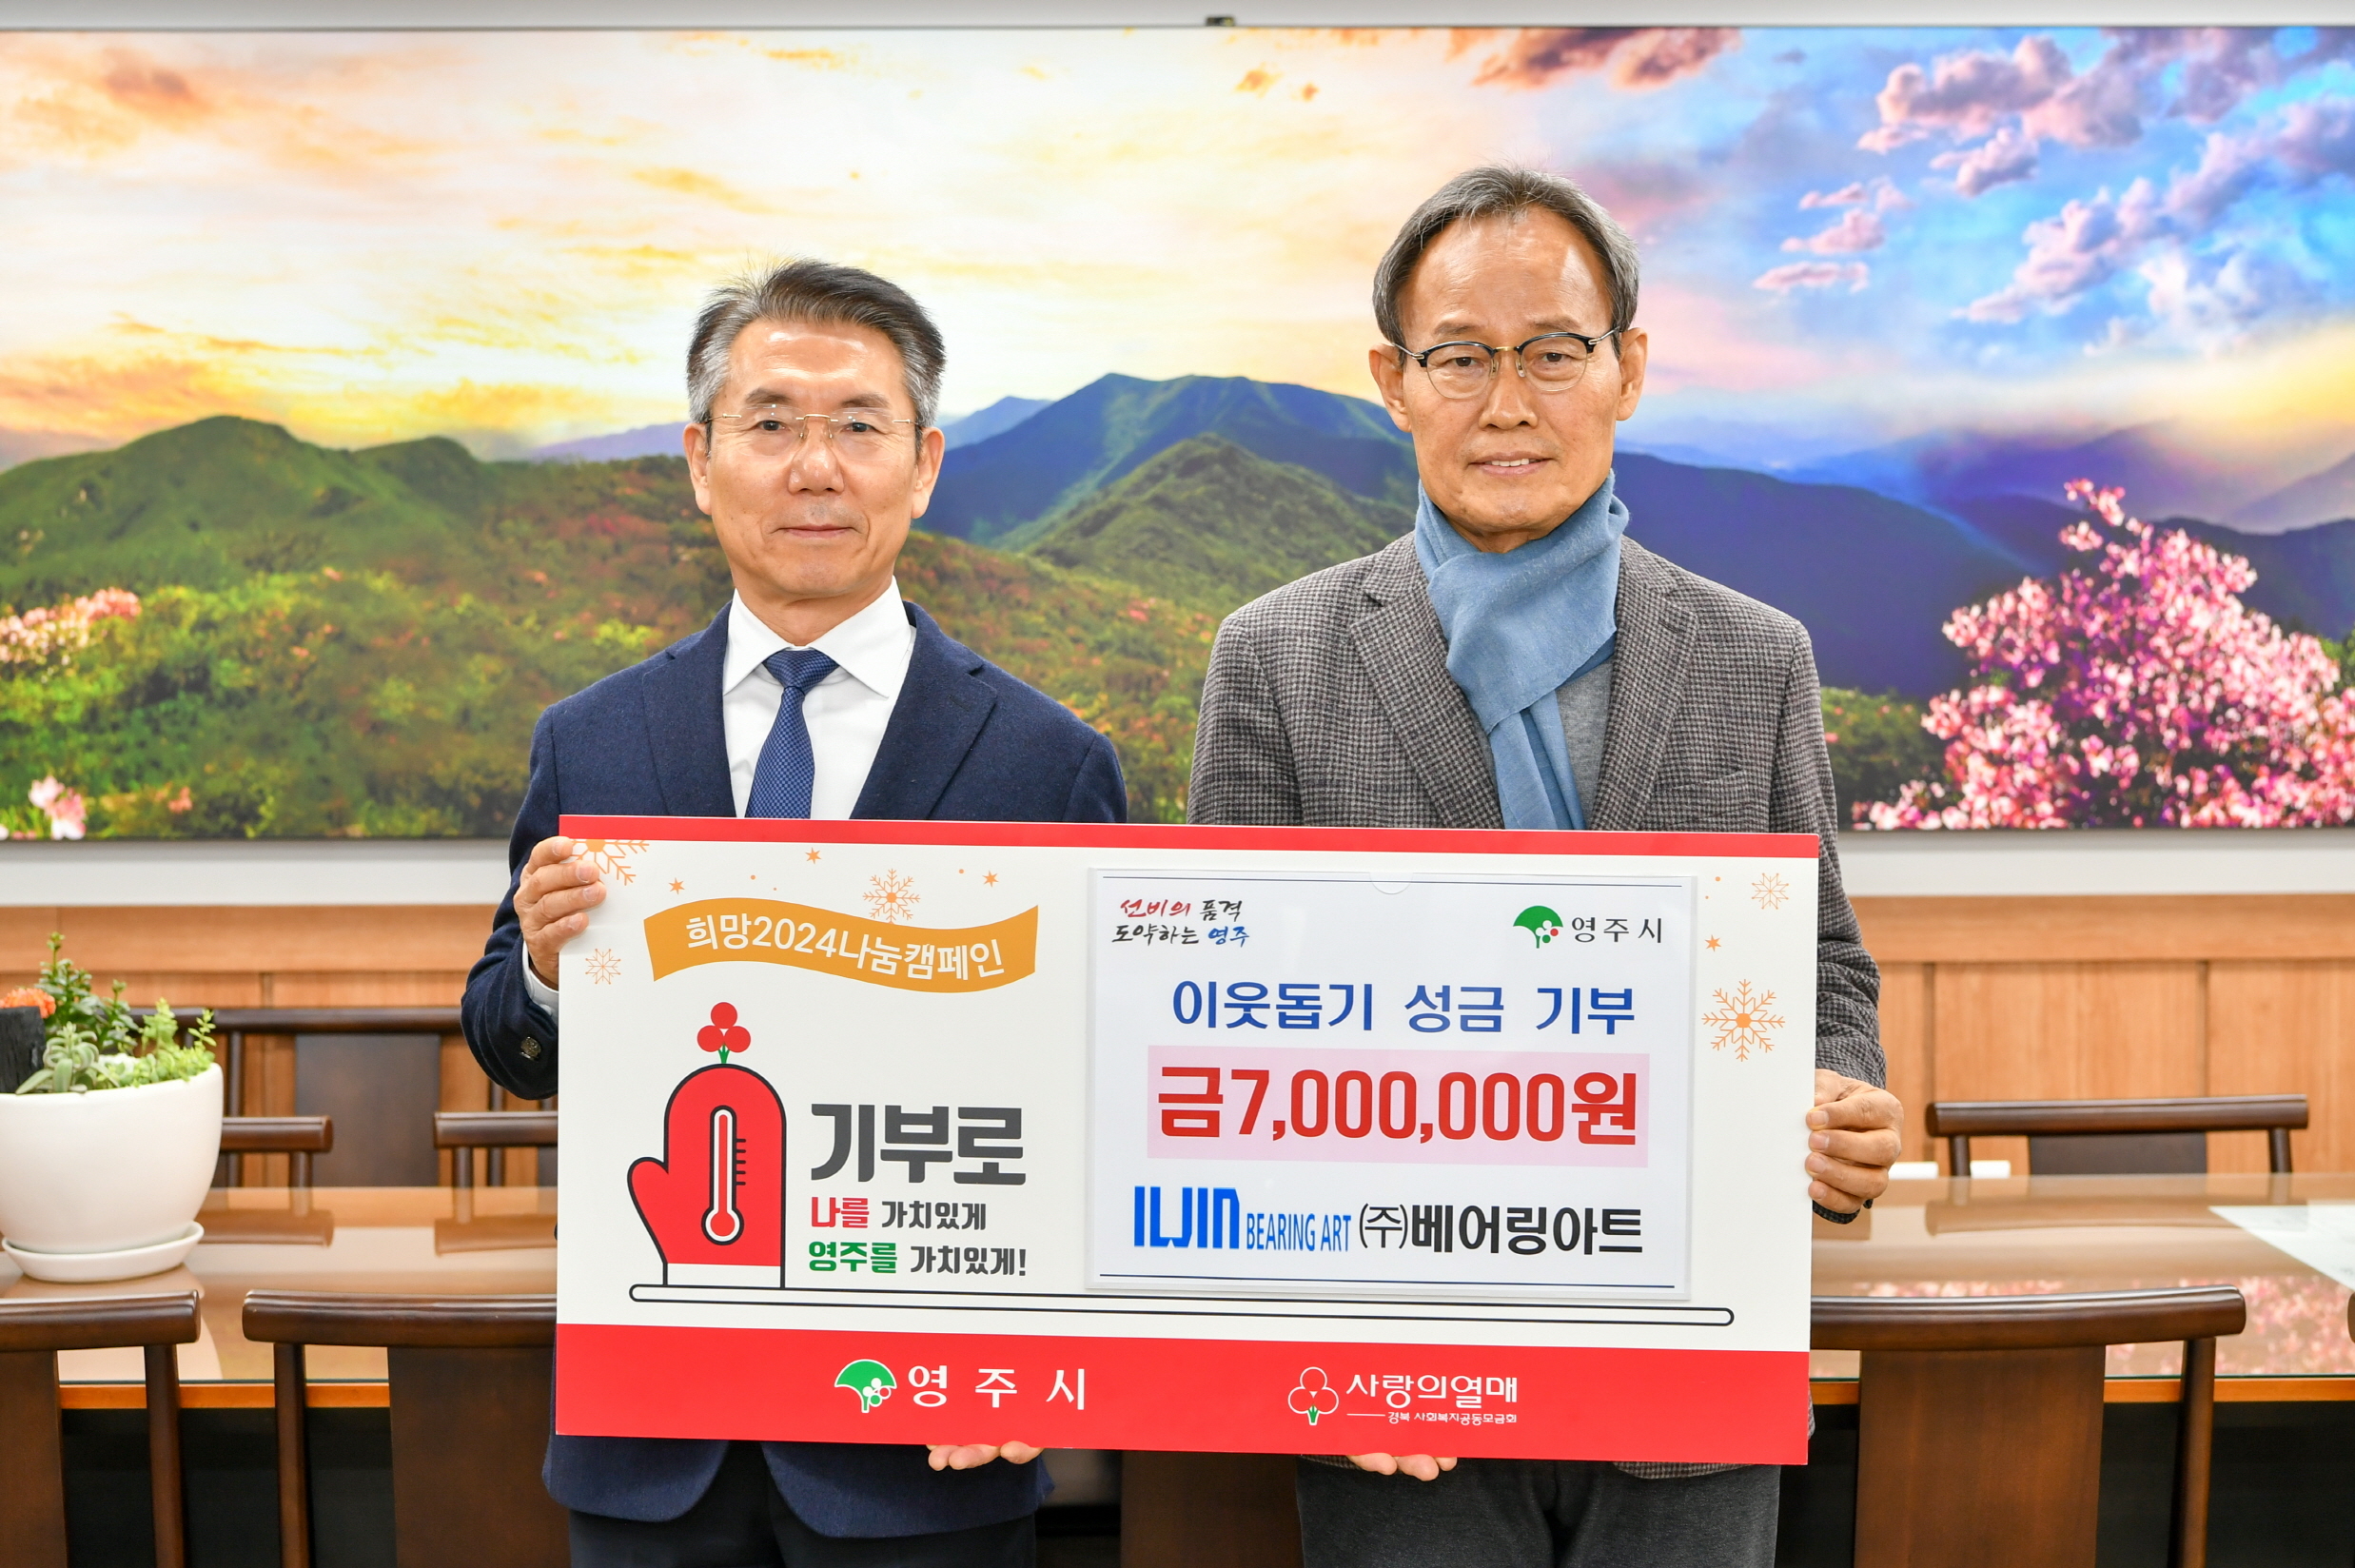 송영수(좌측) ㈜베어링아트 대표이사가 박남서 영주시장에가 이웃돕기 성금 700만원을 전달하고 있다. 영주시 제공